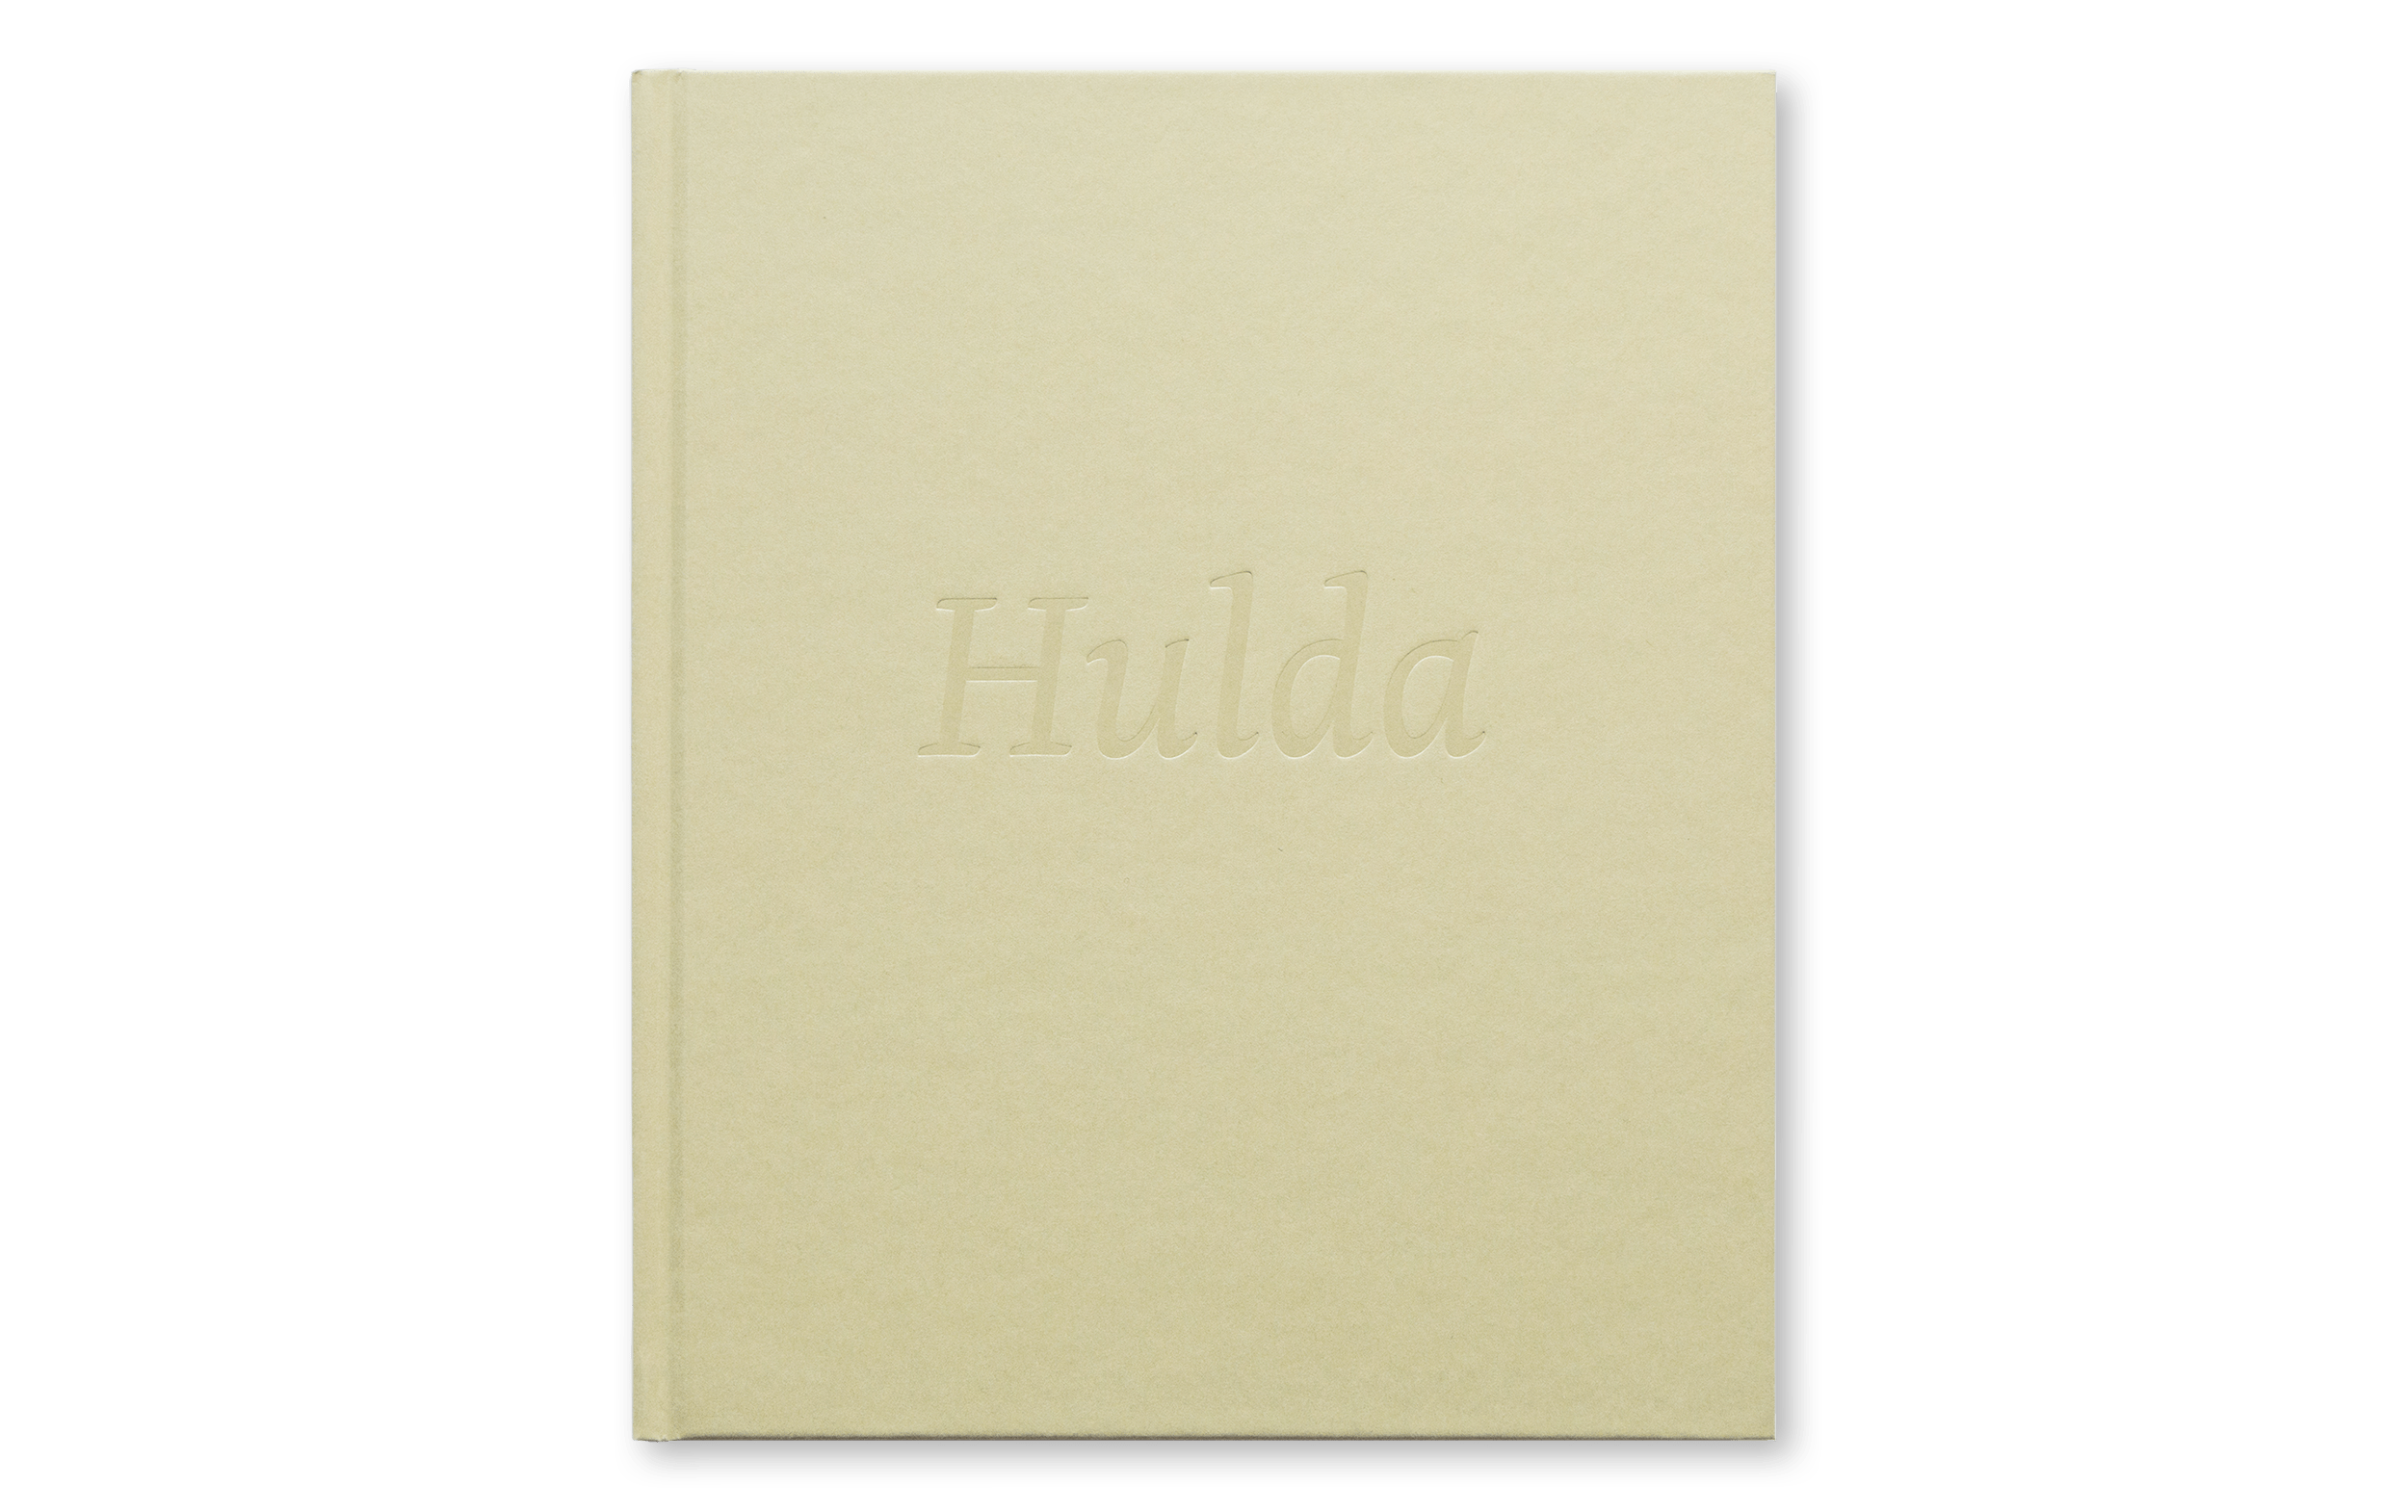 Hulda-lilli-00.png